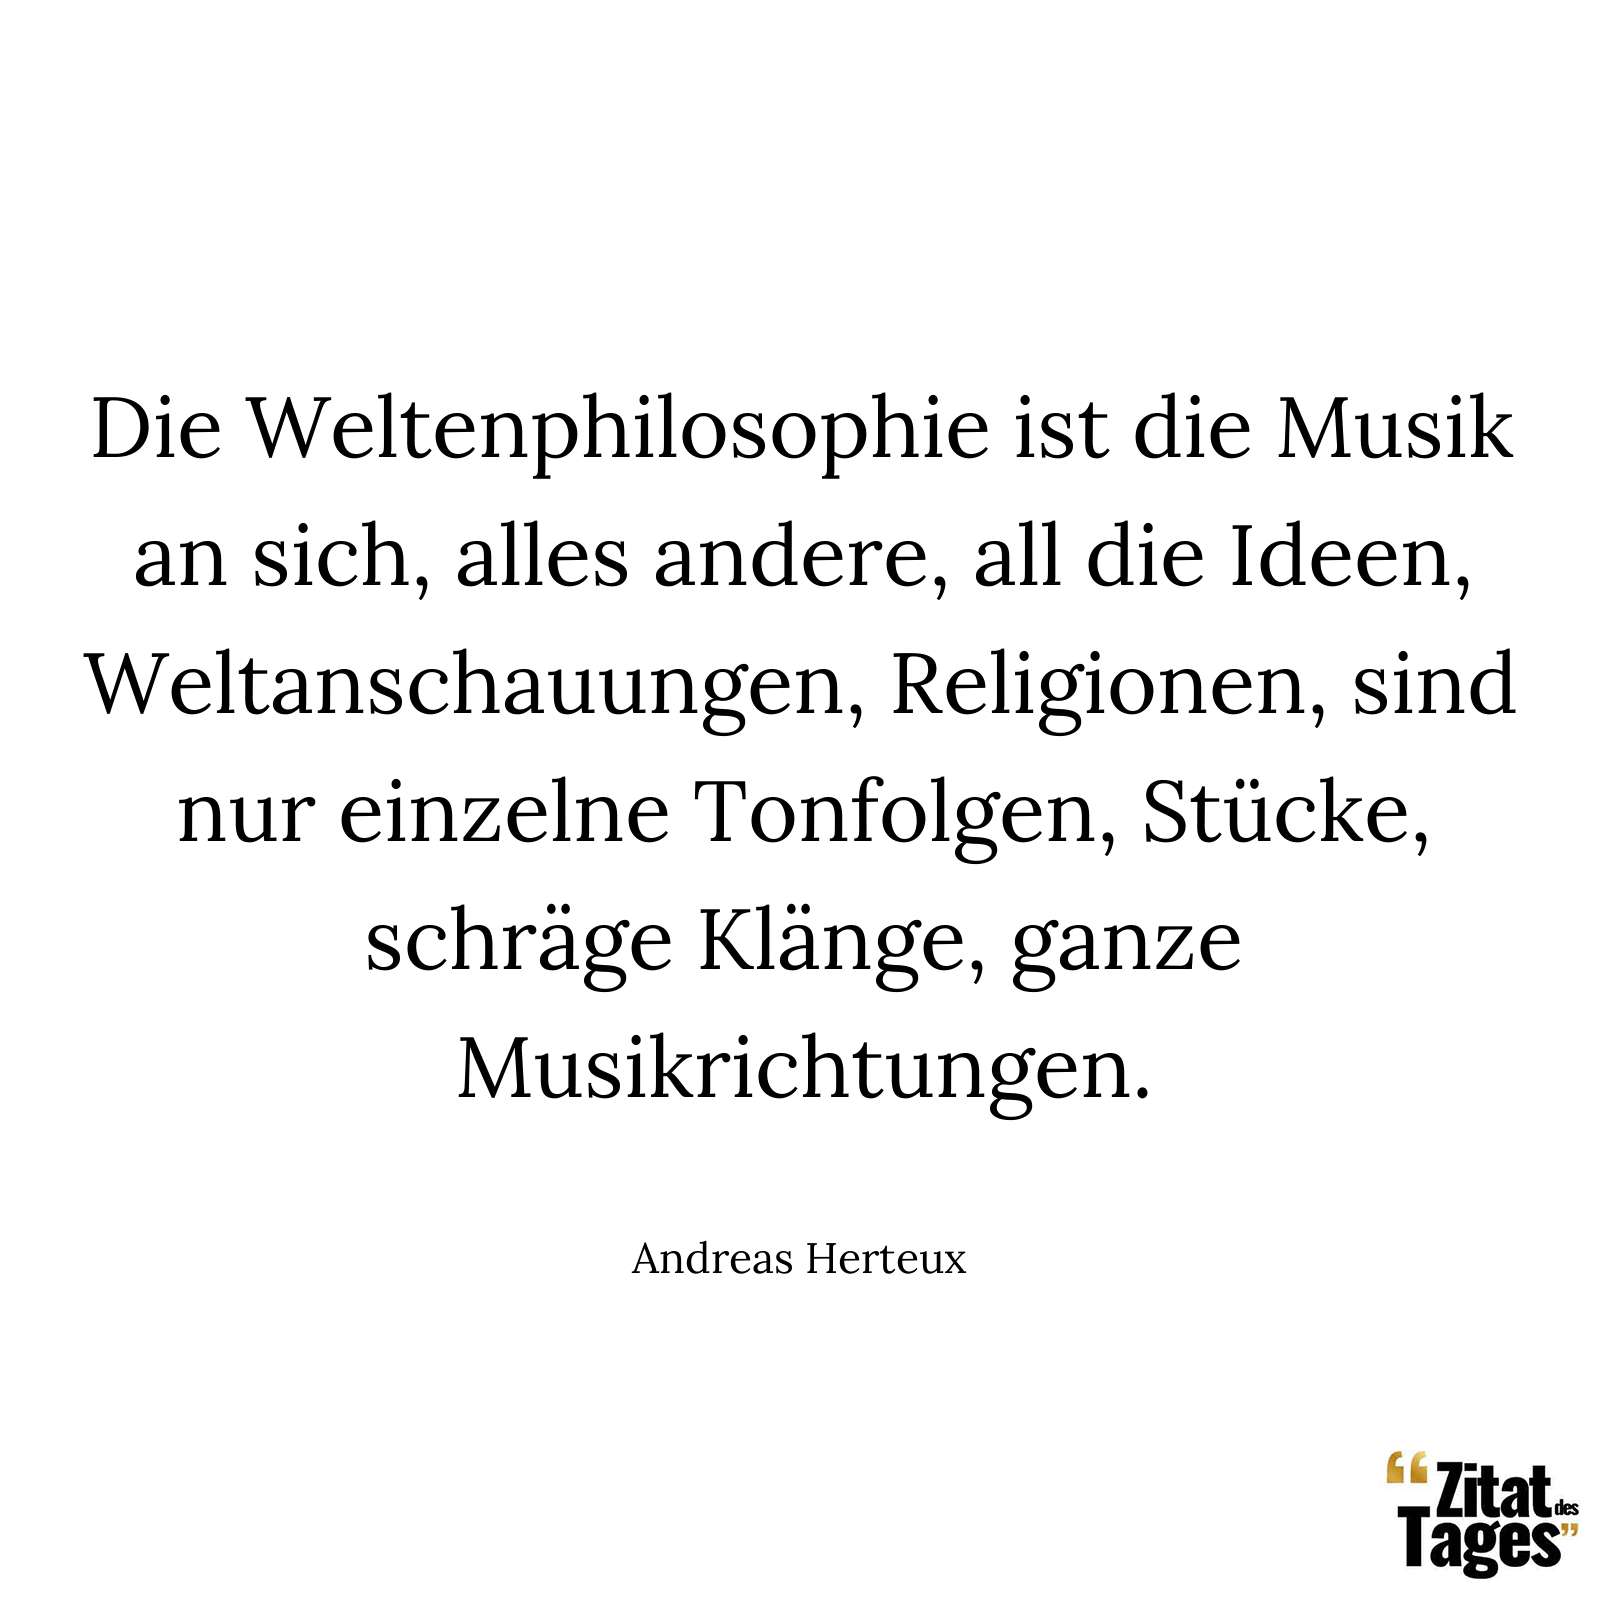 Die Weltenphilosophie ist die Musik an sich, alles andere, all die Ideen, Weltanschauungen, Religionen, sind nur einzelne Tonfolgen, Stücke, schräge Klänge, ganze Musikrichtungen. - Andreas Herteux